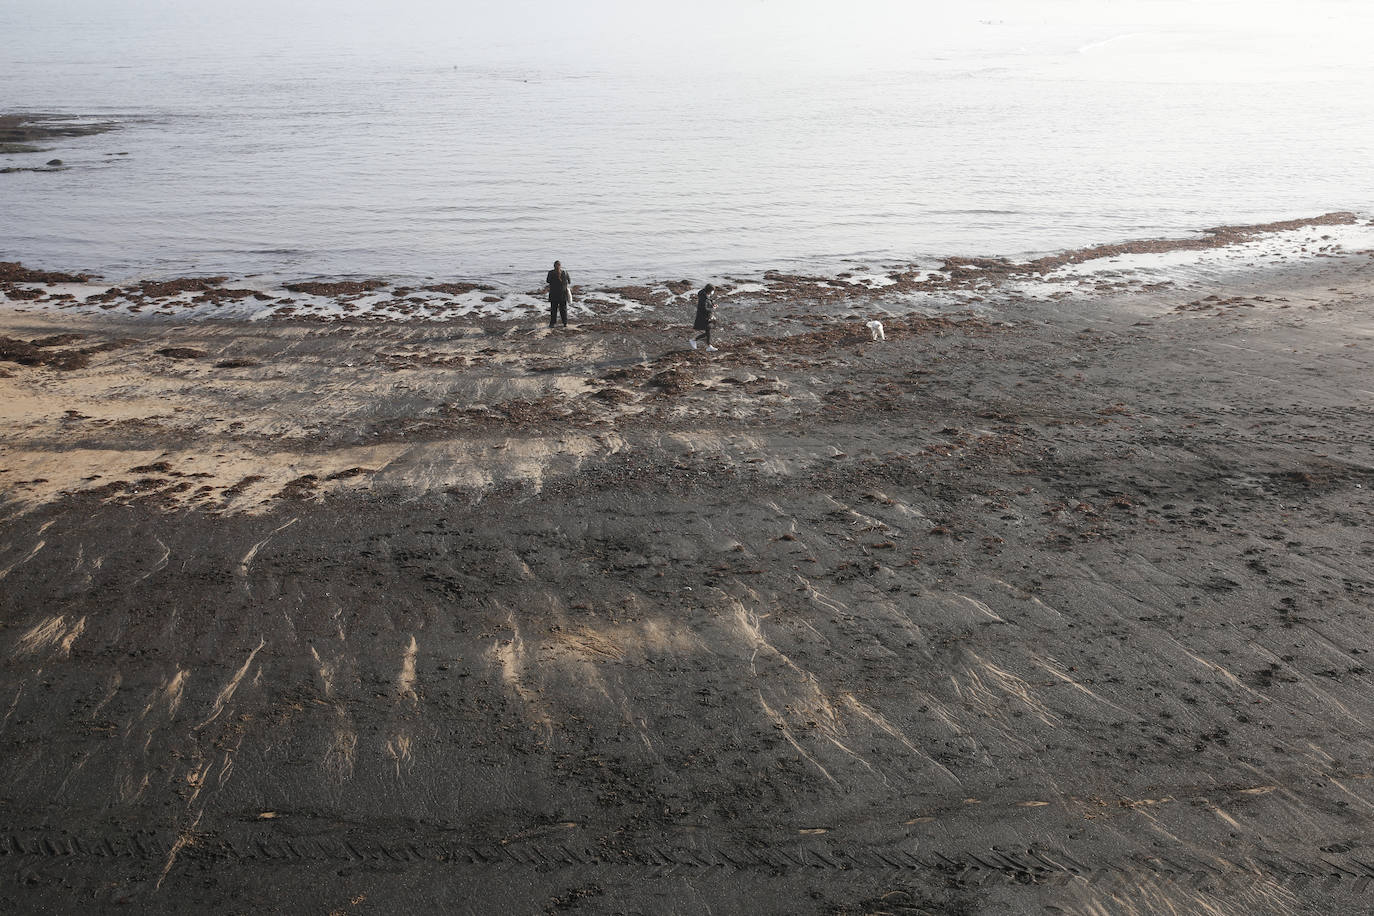 La gijonesa playa de San Lorenzo ha vuelto a amanecer cubierta de carbón, creando una estampa que sigue impactando.